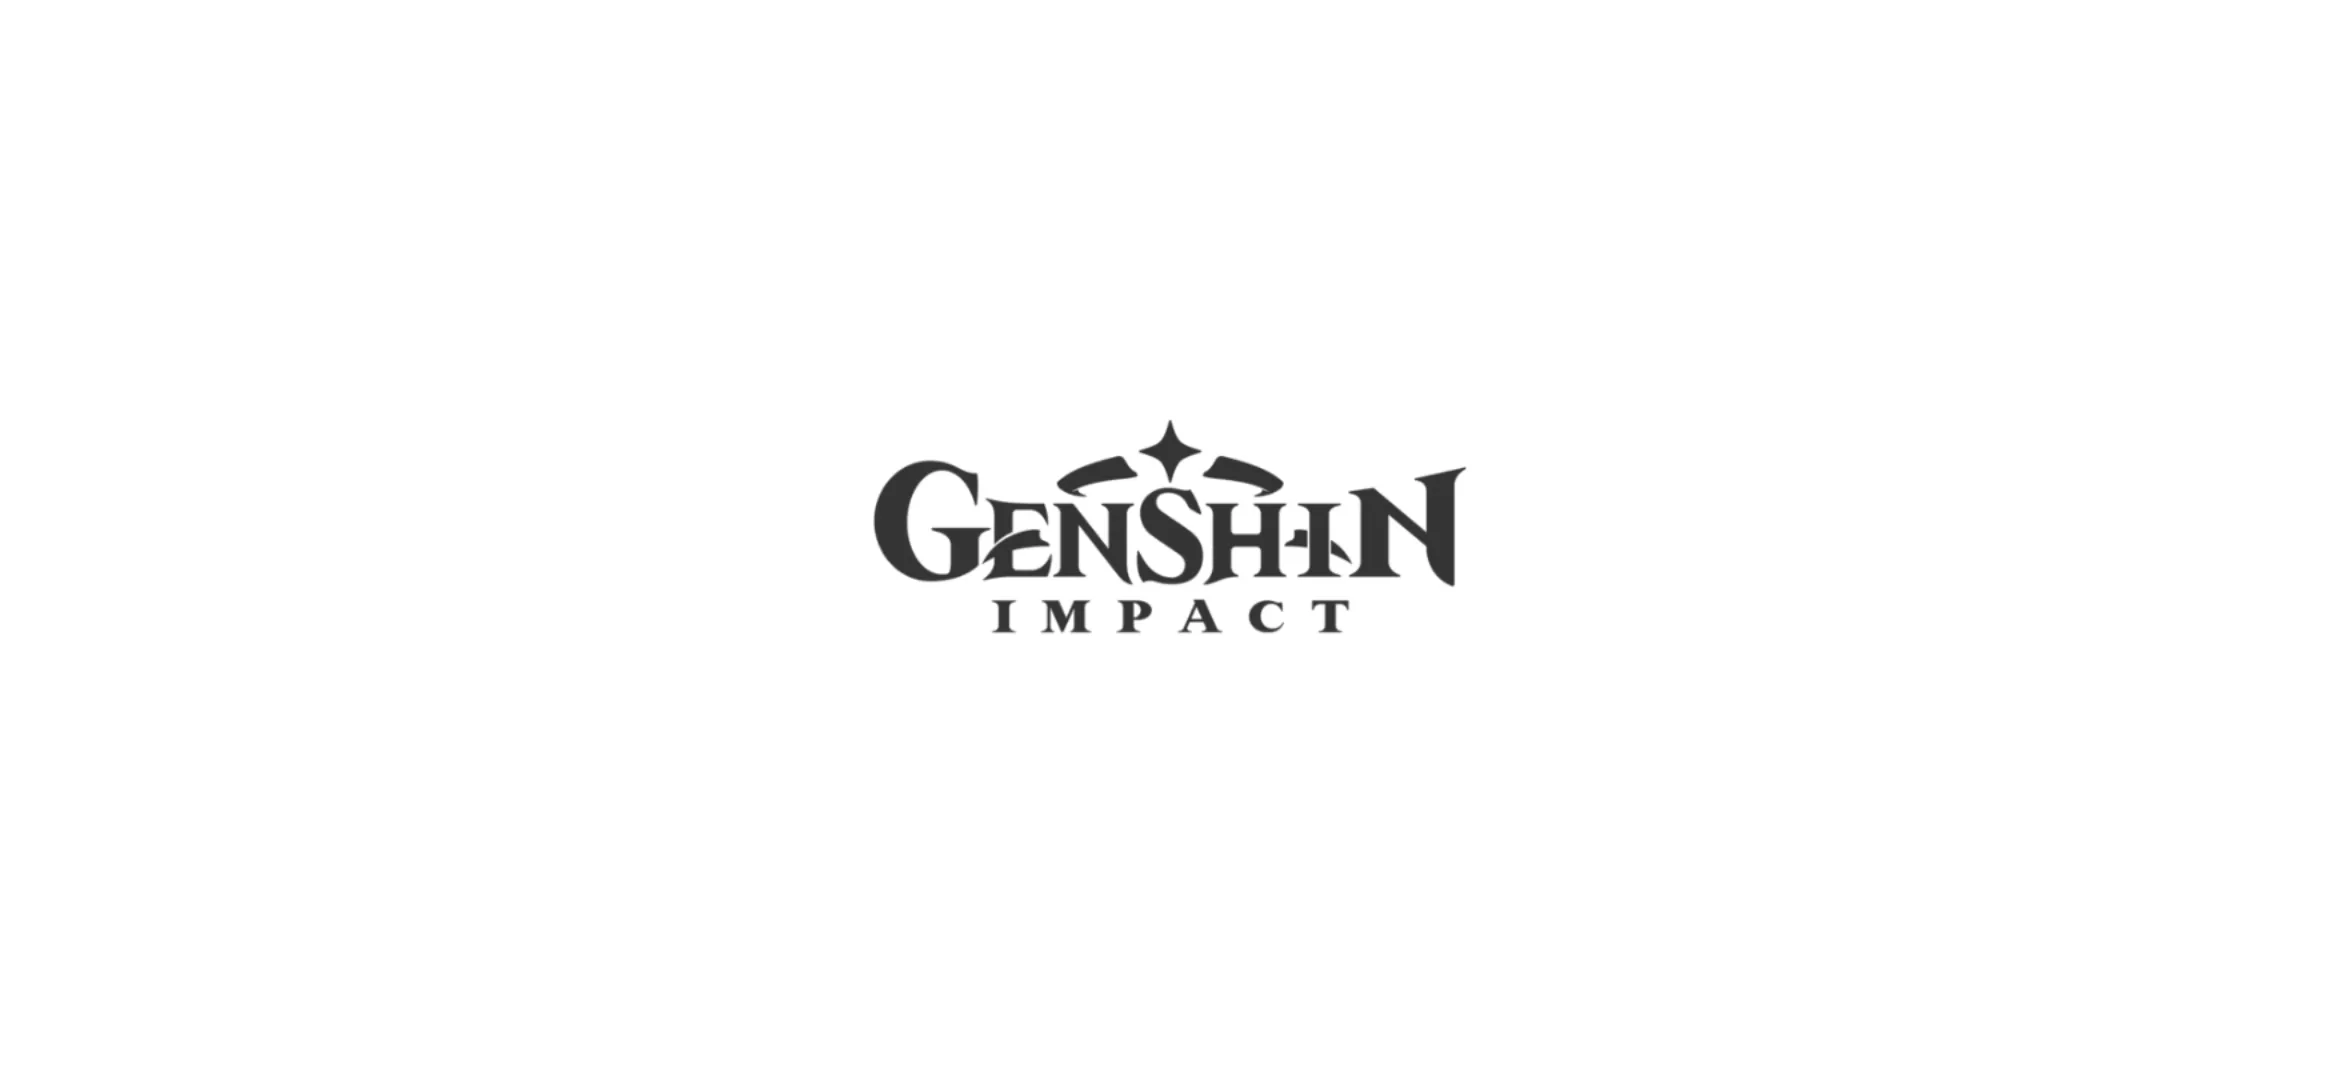 Том 1 глава 1 геншин. Веласкес портрет инфанты. Михойо Геншин. Геншин лого. Логотип ген шин Импакт.